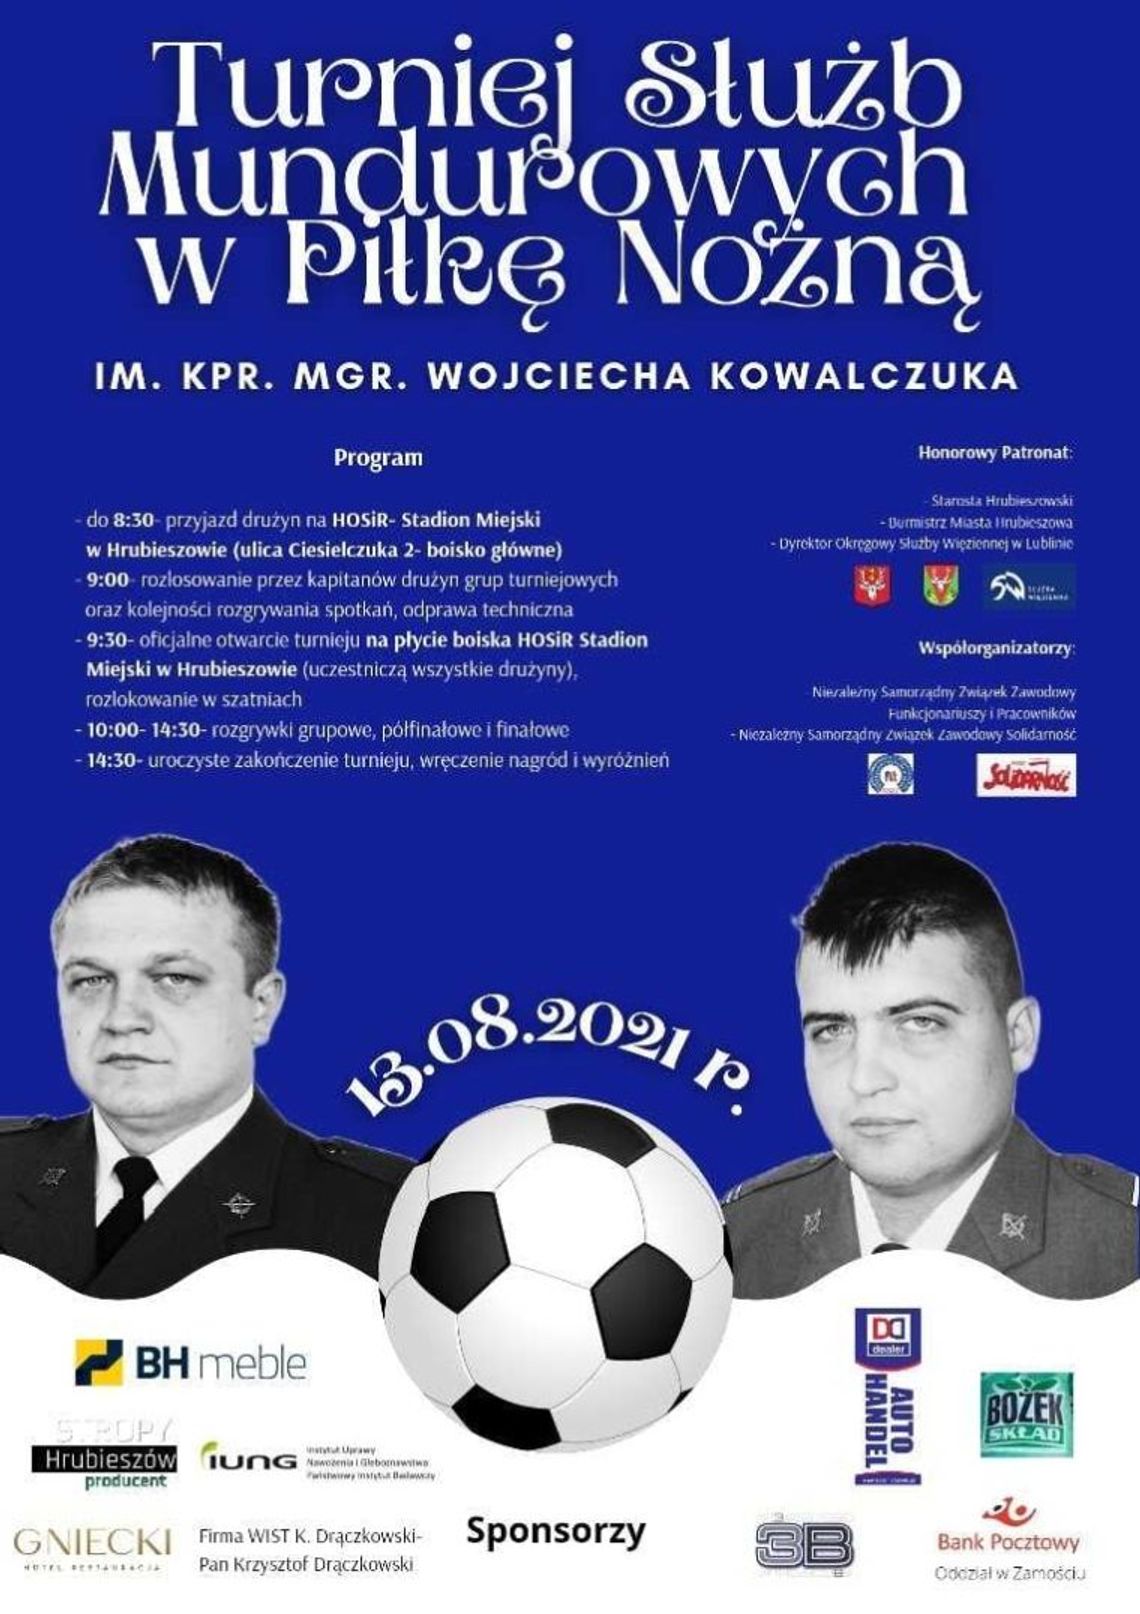 Turniej Służb Mundurowych w Piłce Nożnej im. kpr. mgr. Wojciecha Kowalczuka